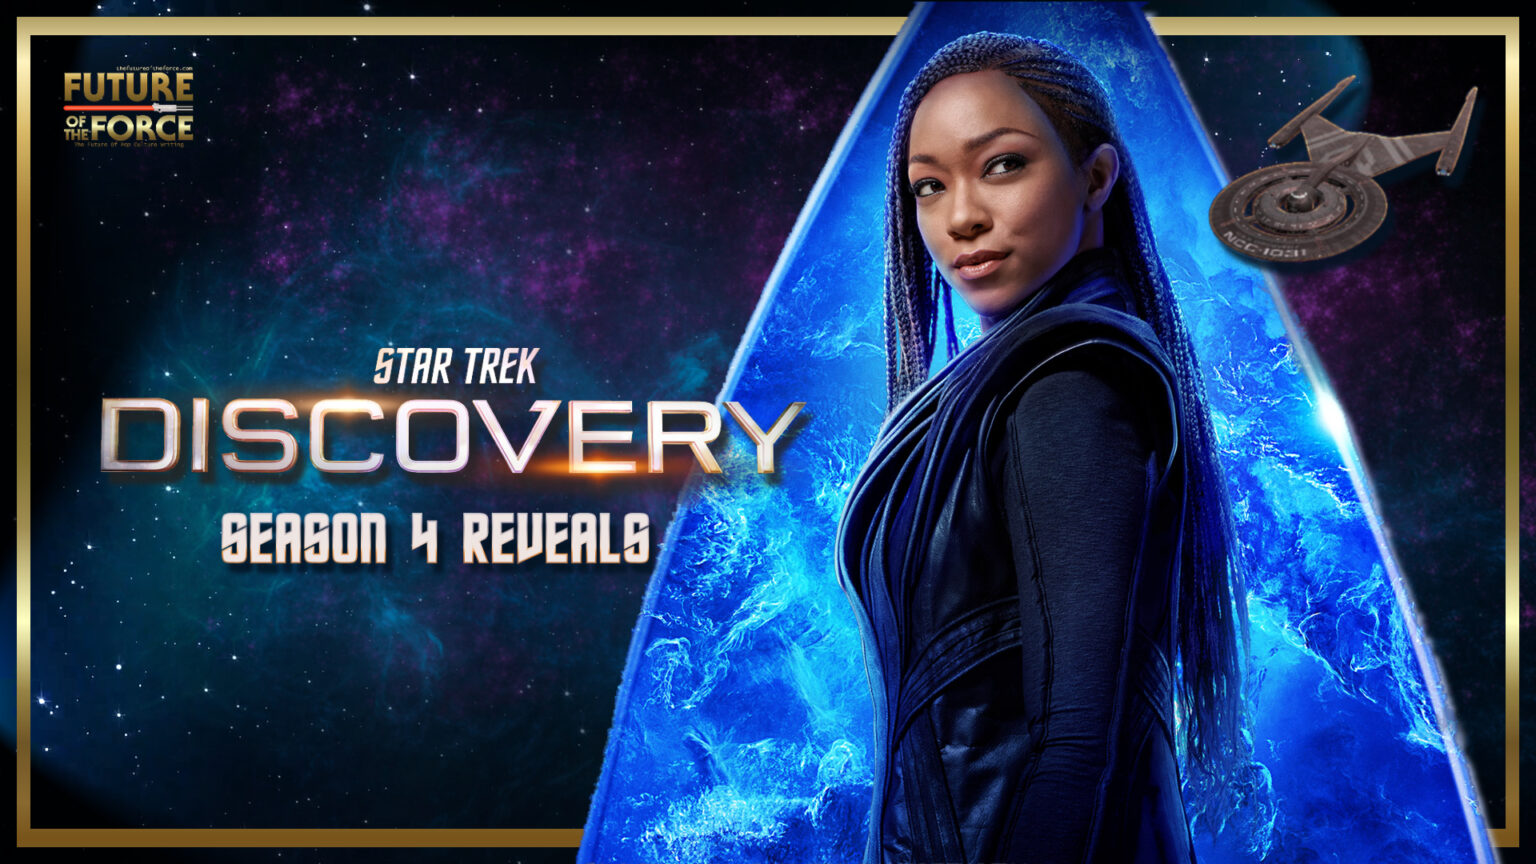 star trek discovery season 4 netflix release date